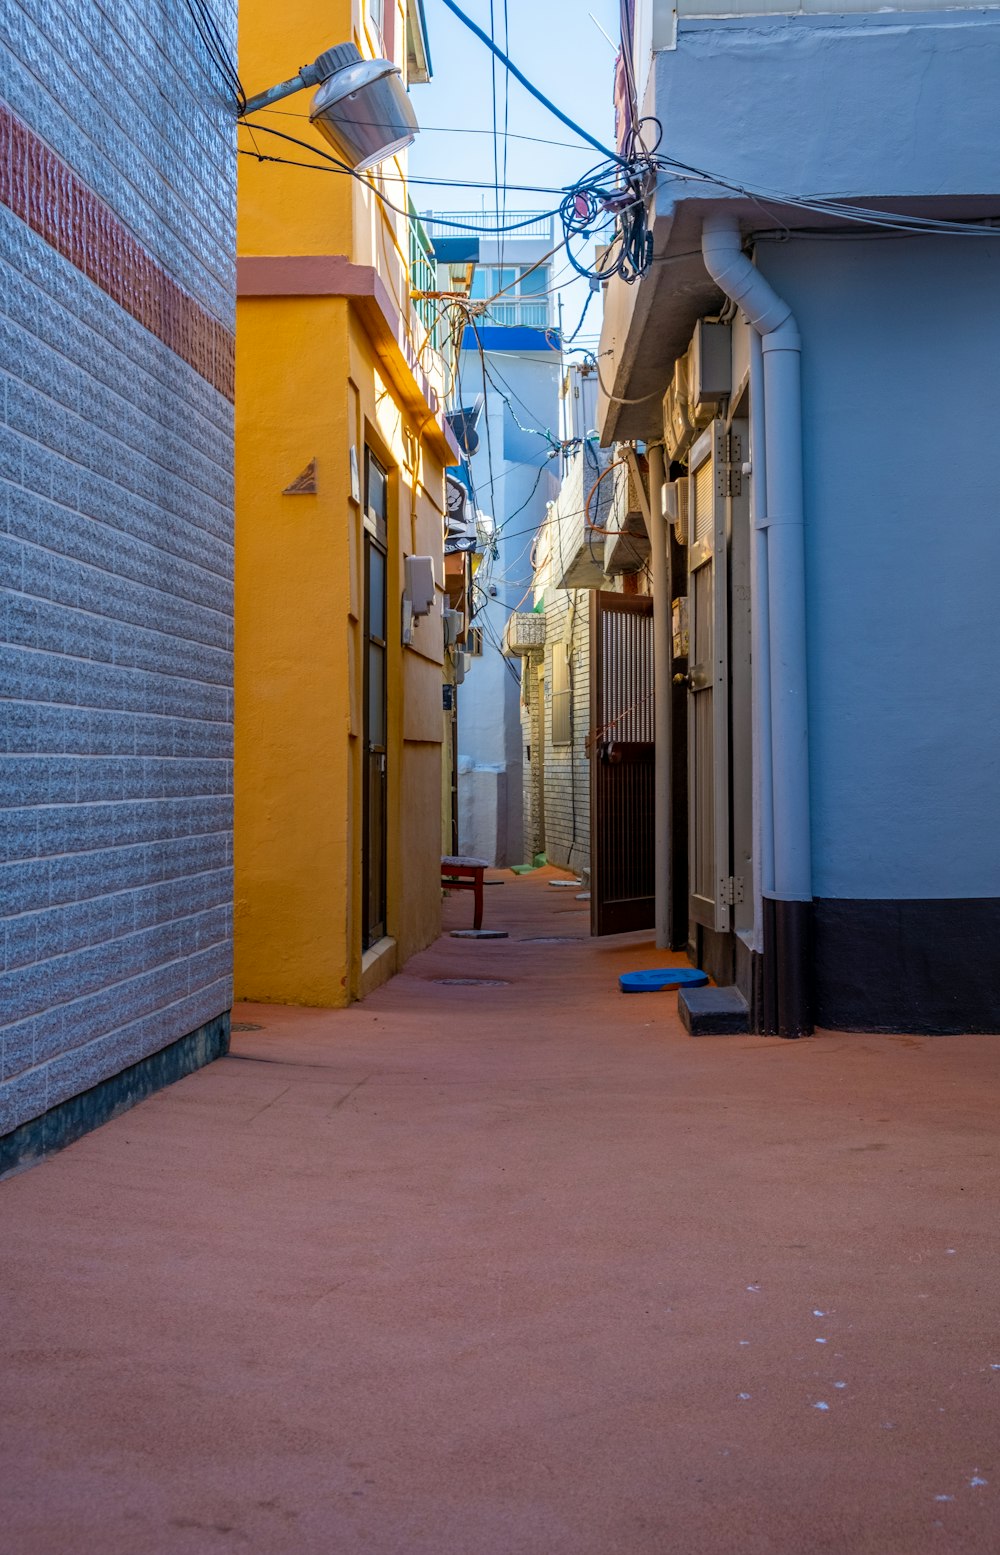 Una stretta strada della città con un edificio giallo